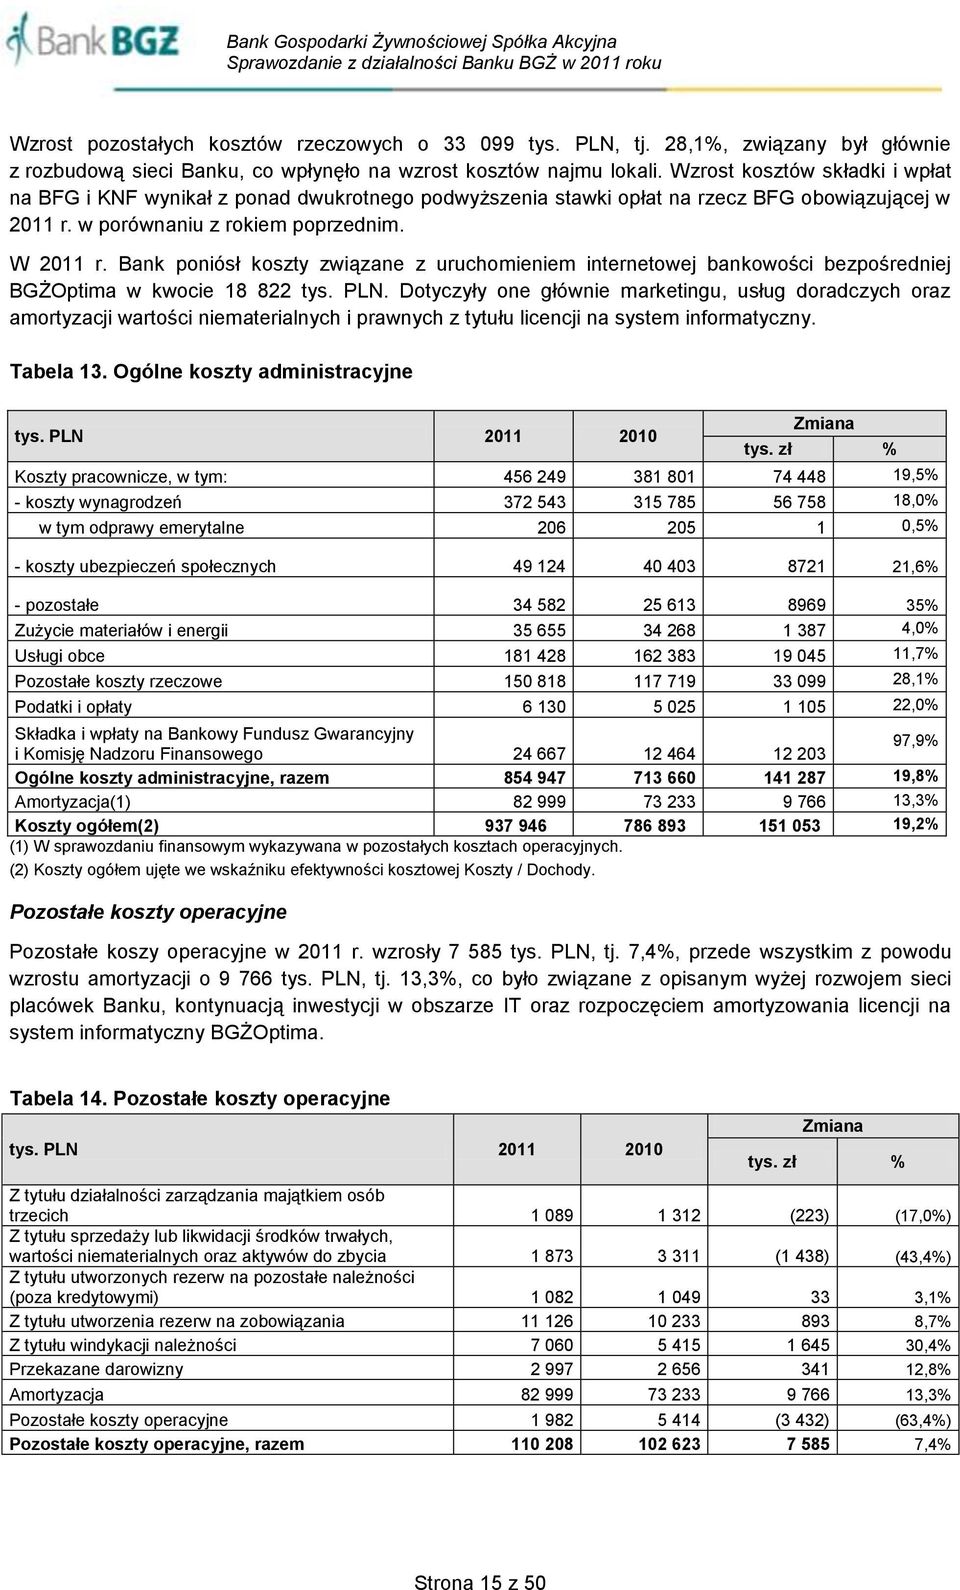 Bank poniósł koszty związane z uruchomieniem internetowej bankowości bezpośredniej BGŻOptima w kwocie 18 822 tys. PLN.